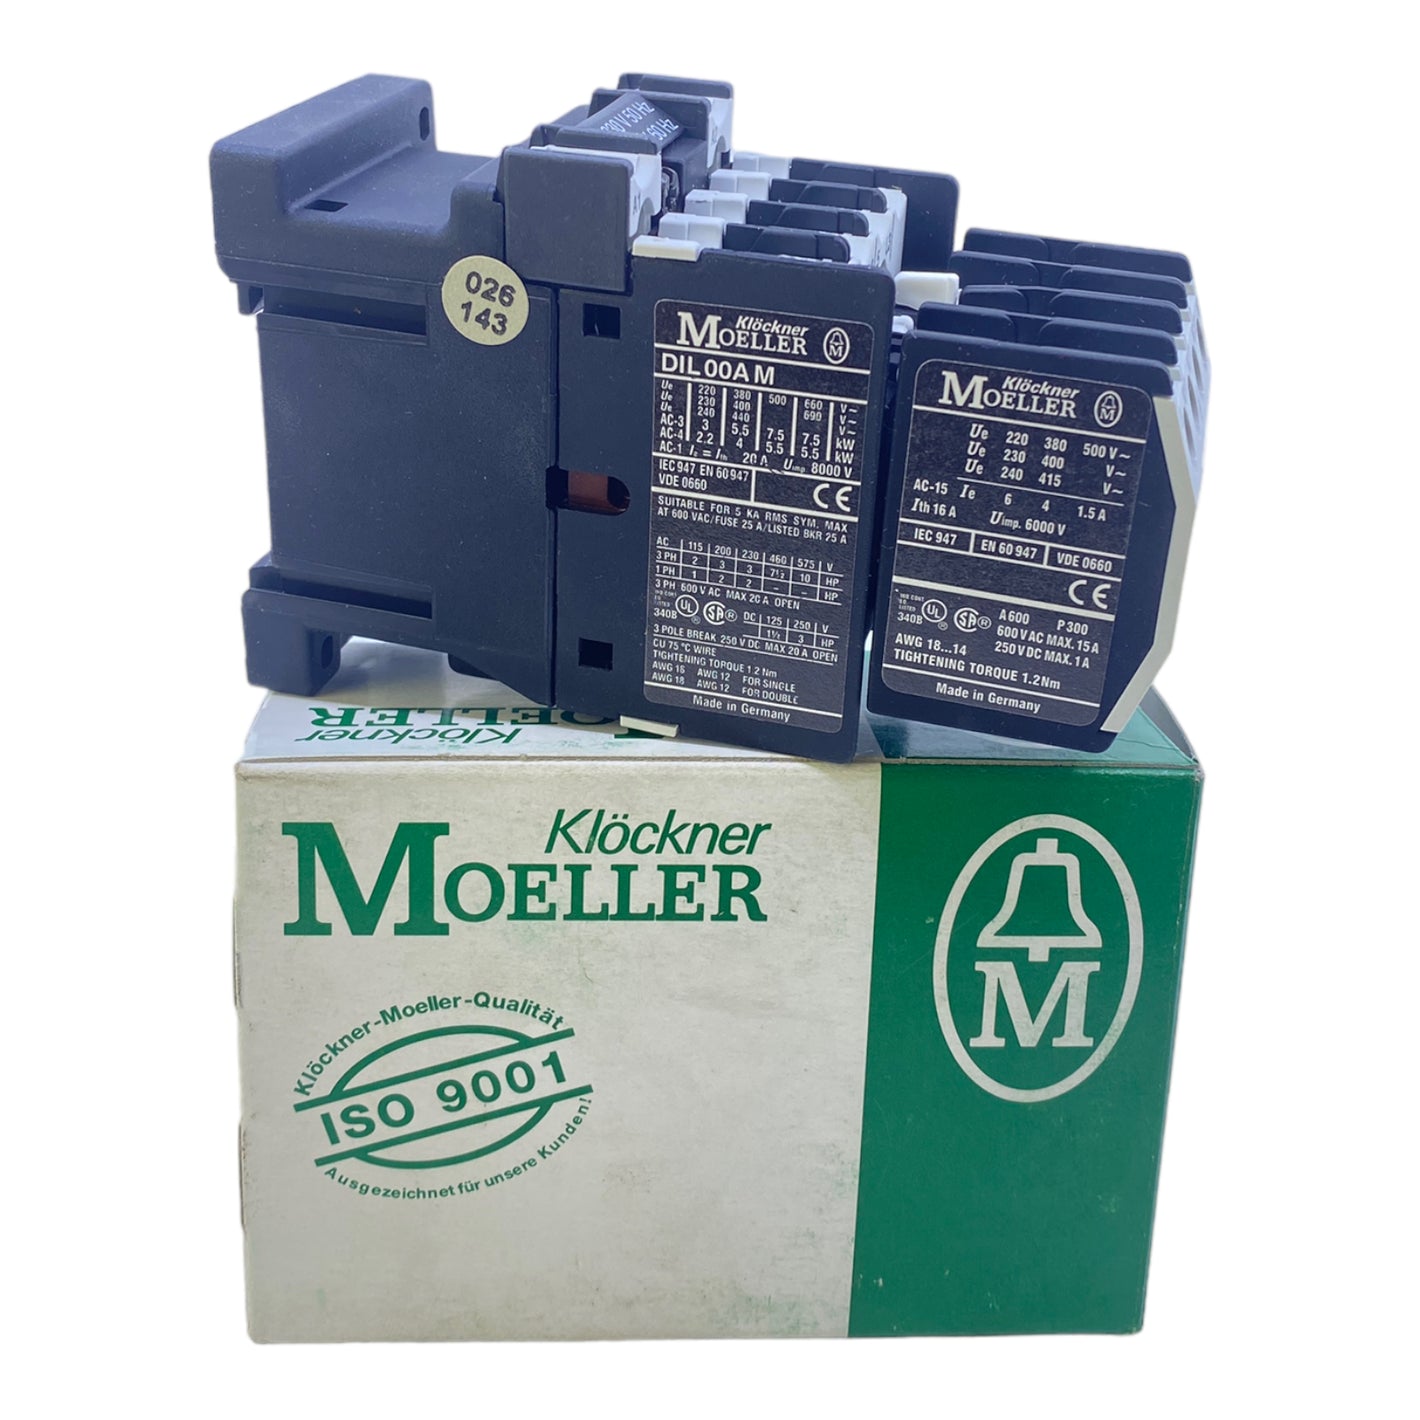 Klöckner Moeller DIL00AM/22 circuit breaker 230V 50HZ 240V 60HZ 